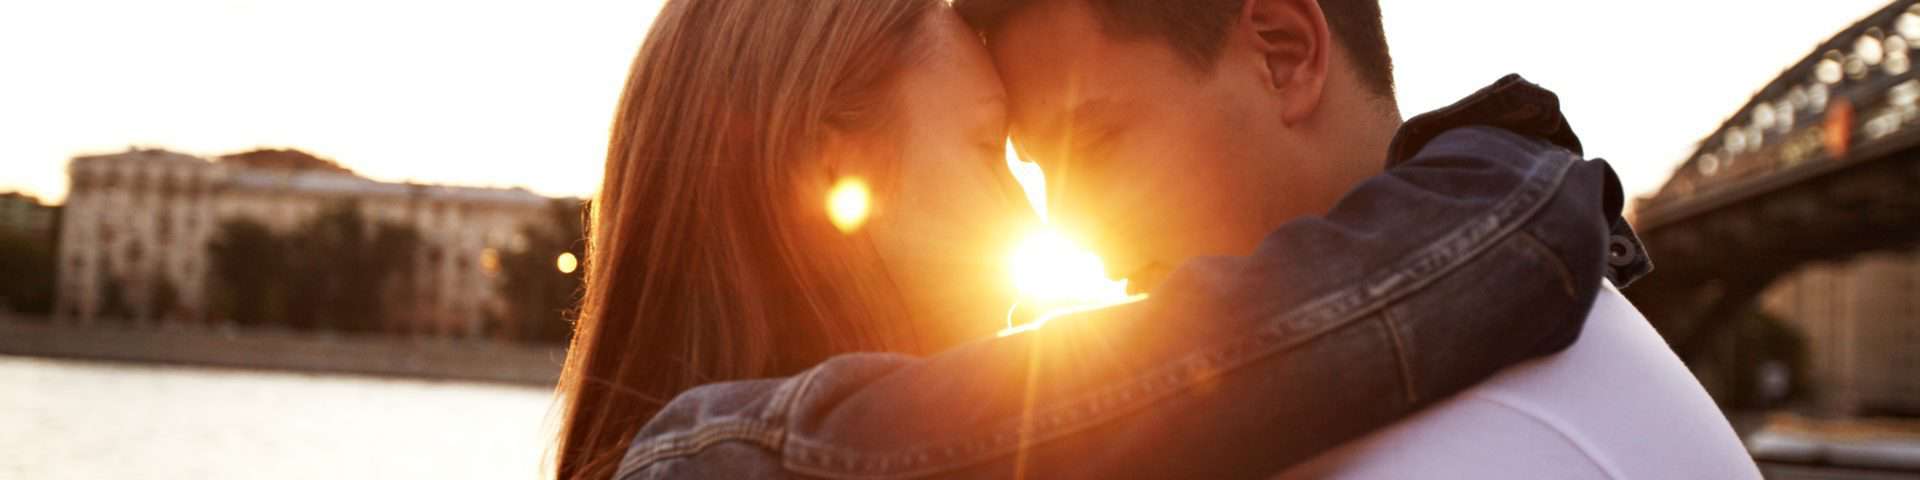 10 sichere Zeichen, dass es wahre Liebe ist & Er derjenige, mit dem du zusammen sein solltest